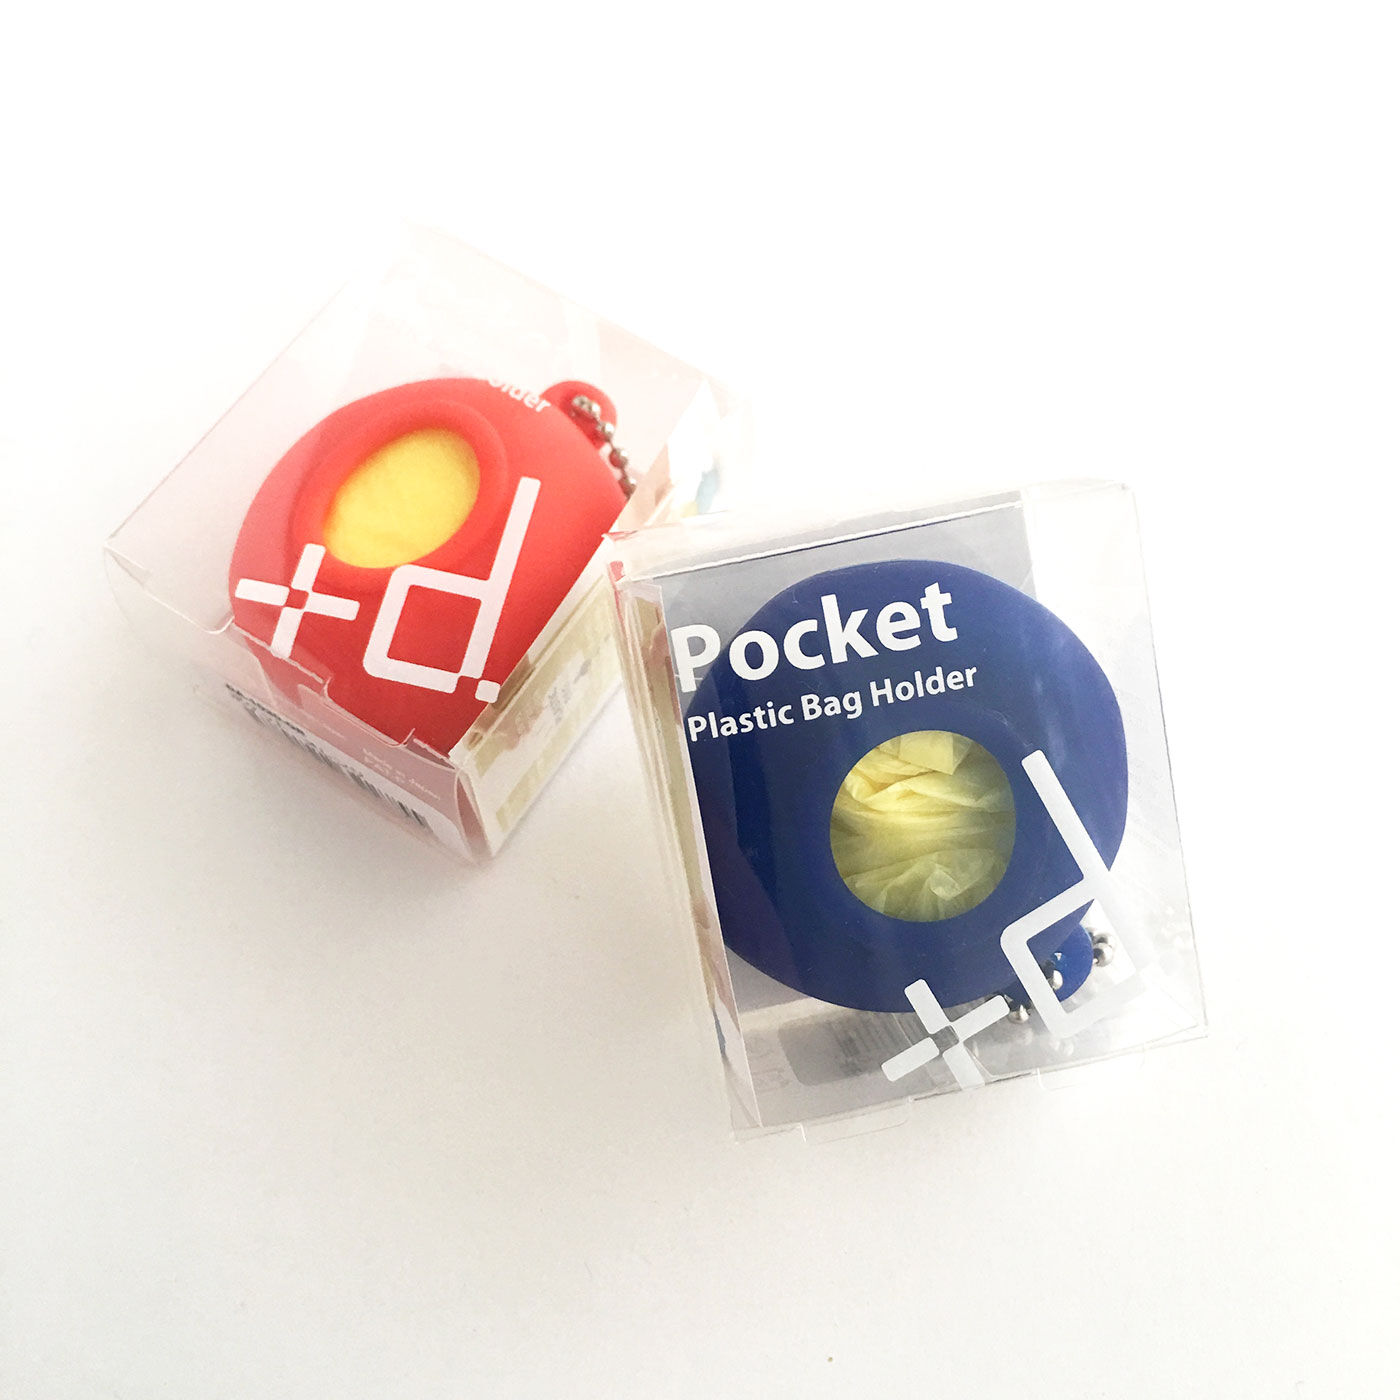 フェリシモの雑貨 Kraso|レジ袋や薄手のポリ袋を入れて携帯するかわいい「ポケット」2個セット|専用ケース入り。ちょっとしたお礼など、プチギフトにもおすすめです。